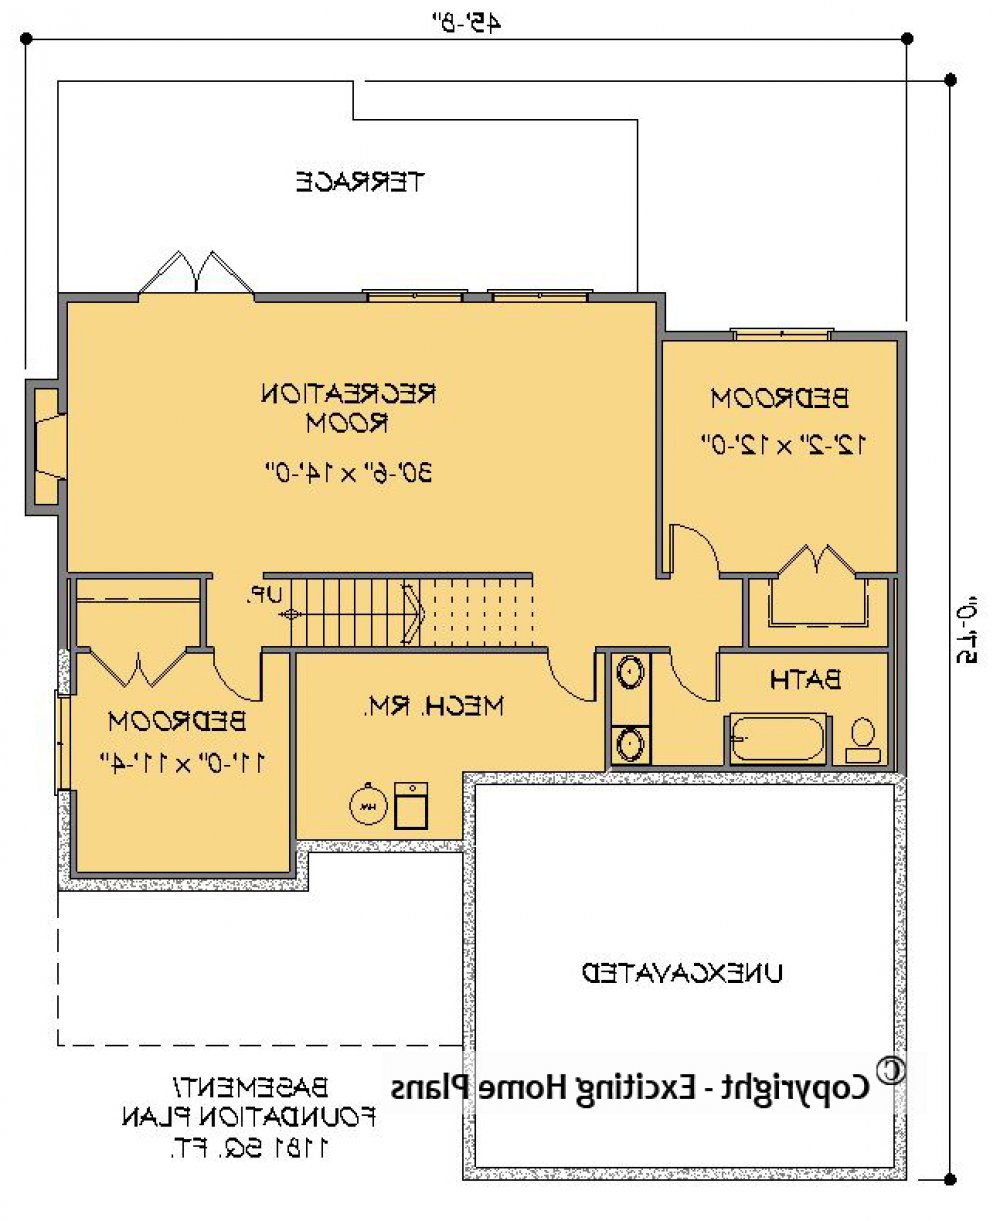 House Plan E1451-10 Lower Floor Plan REVERSE